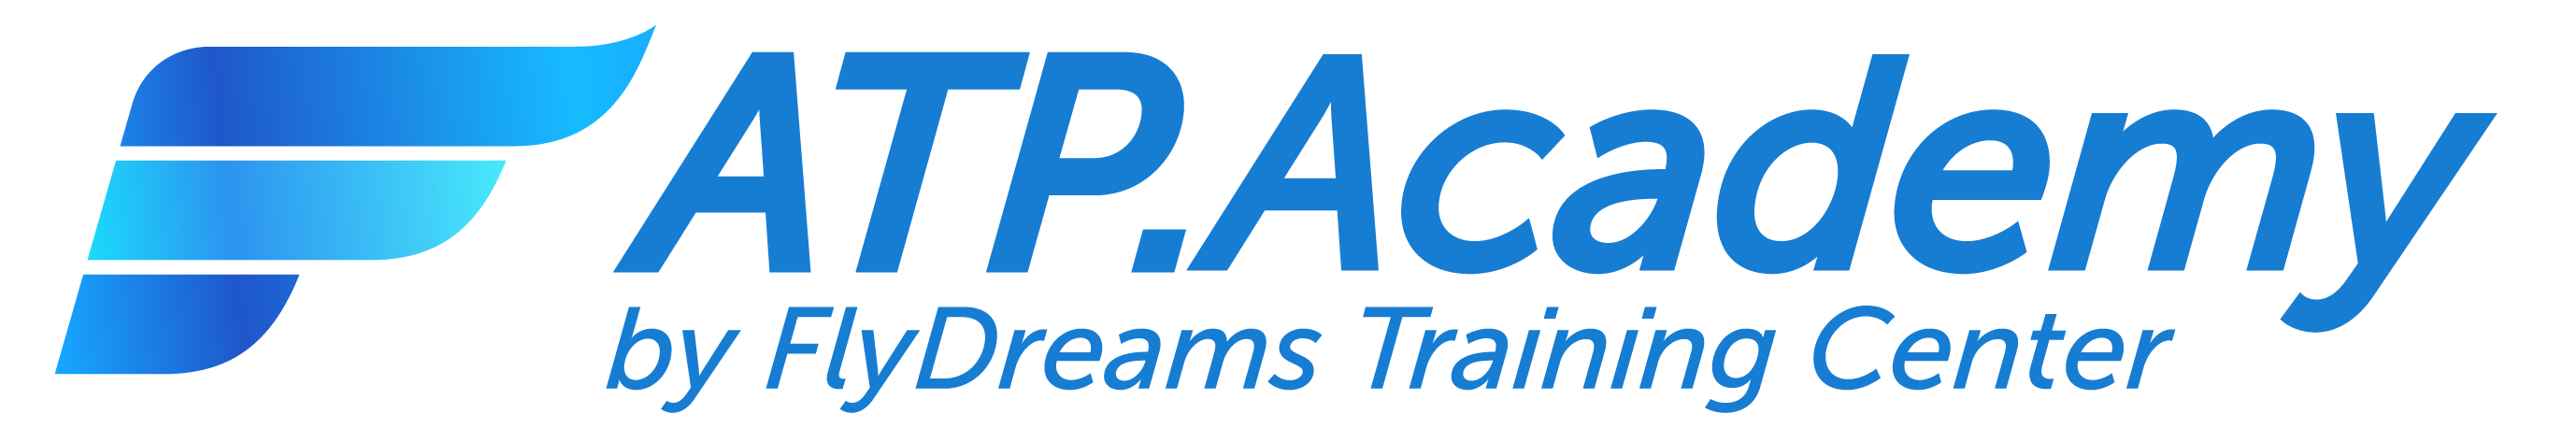 ATP.Academy logo